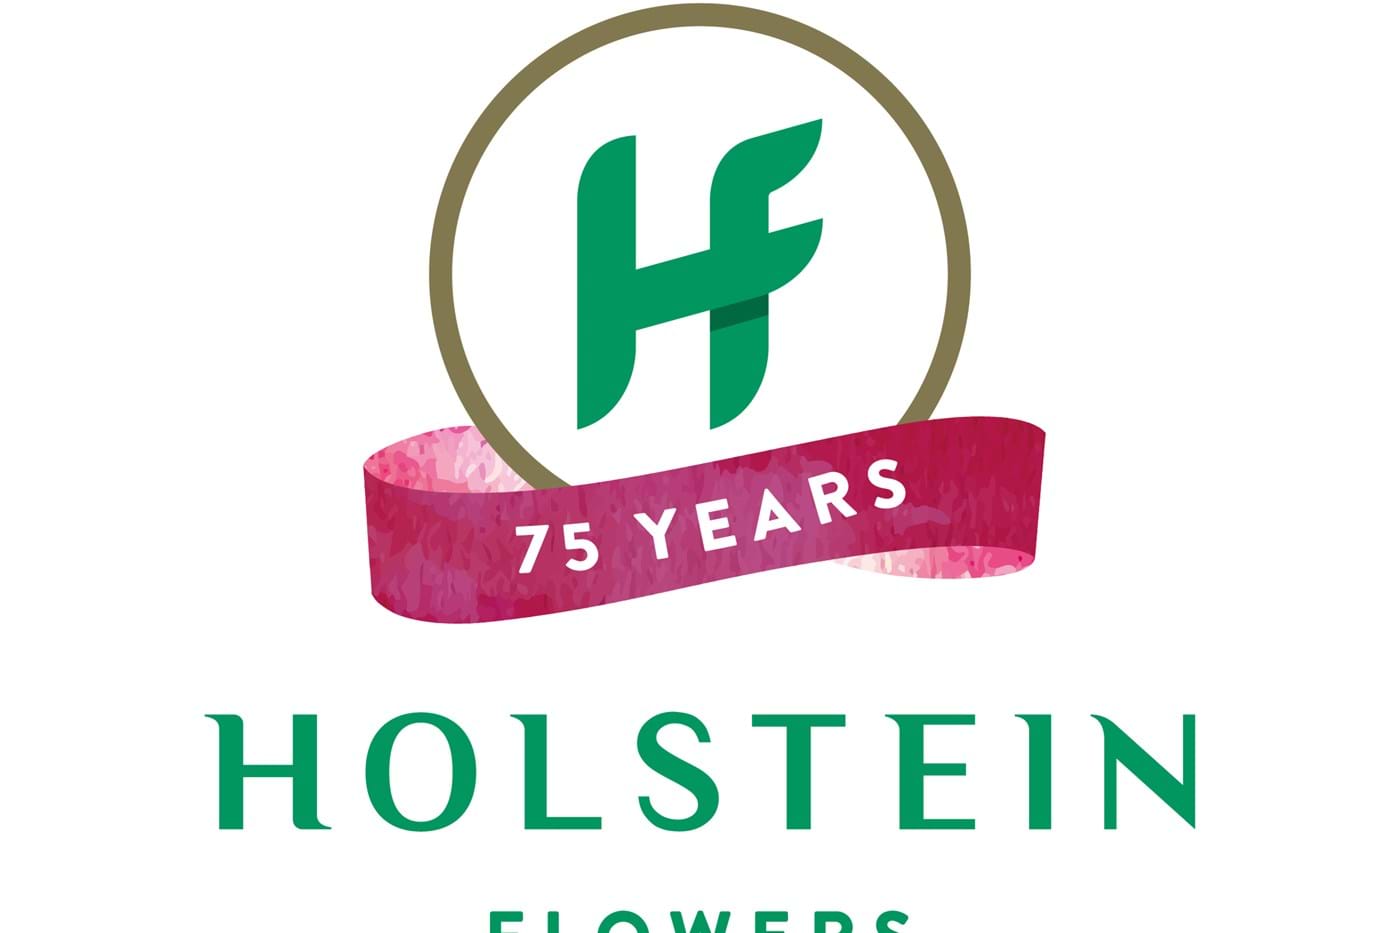 Holstein Flowers 75 jaar!